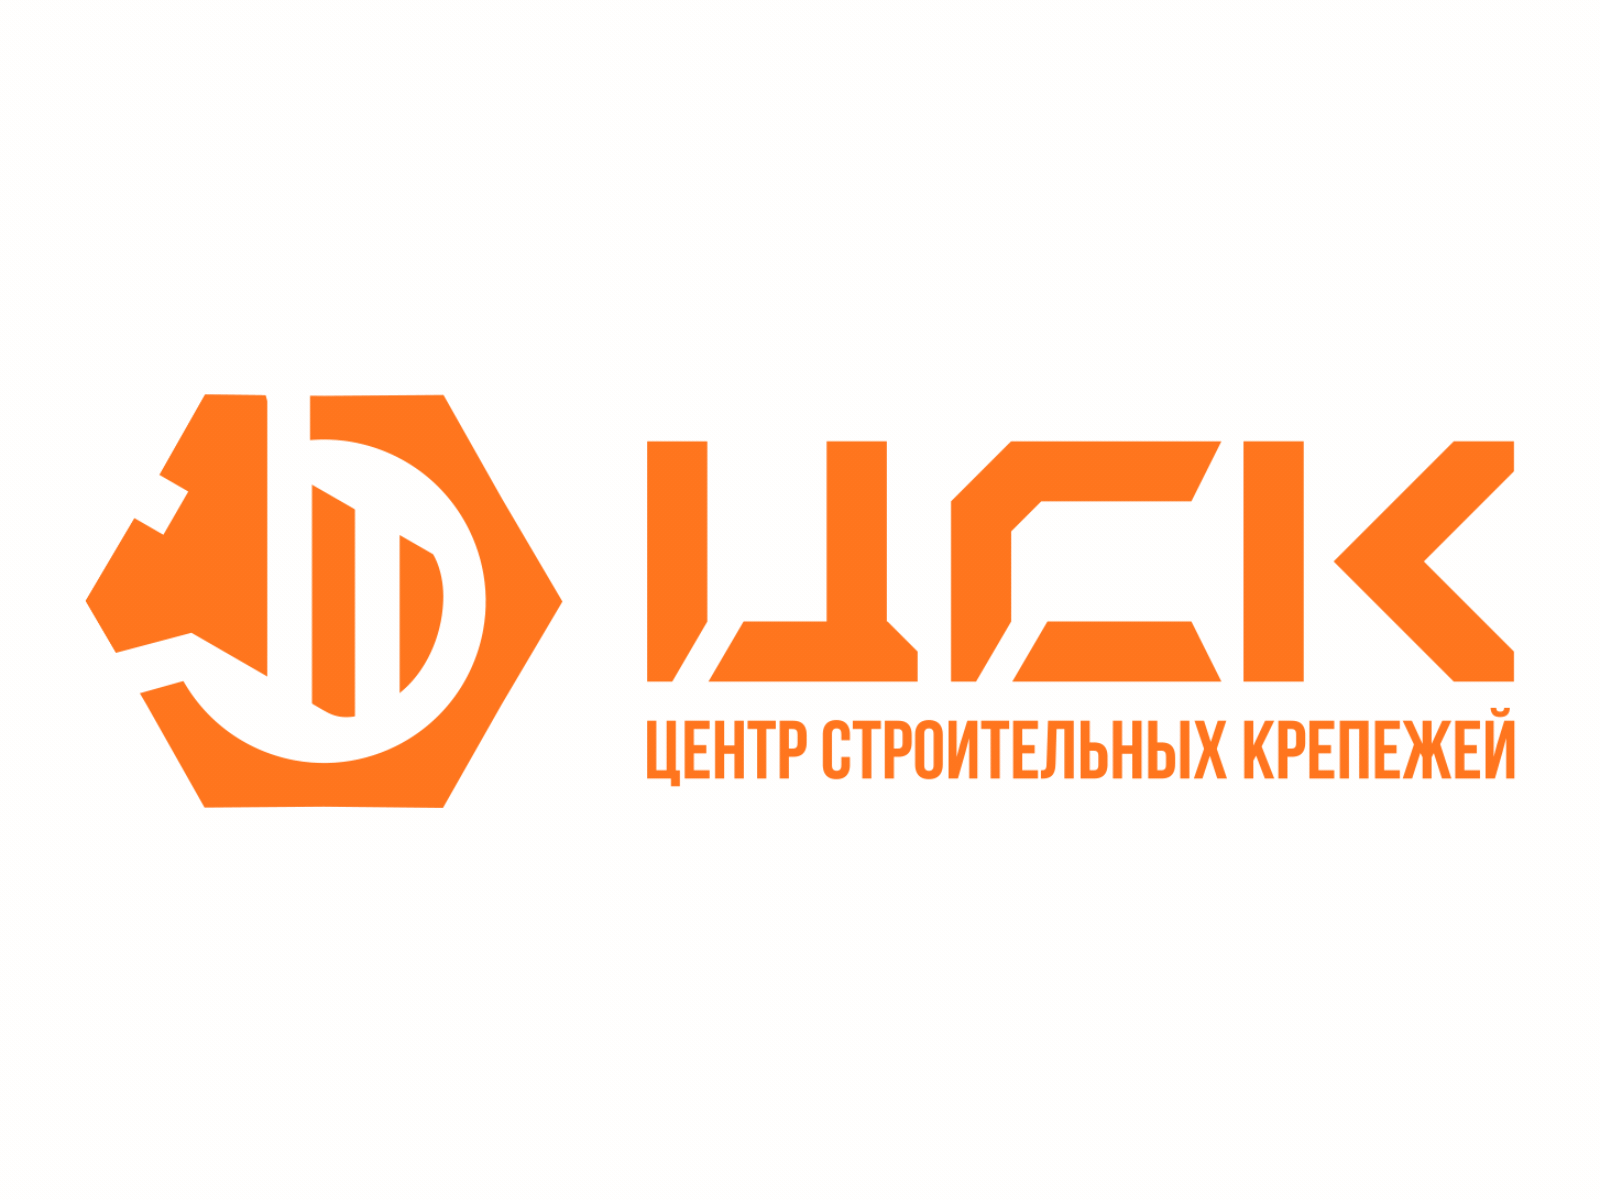 CSK letter logo design on white background. CSK creative circle letter logo  concept. CSK letter design. 20408805 Vector Art at Vecteezy